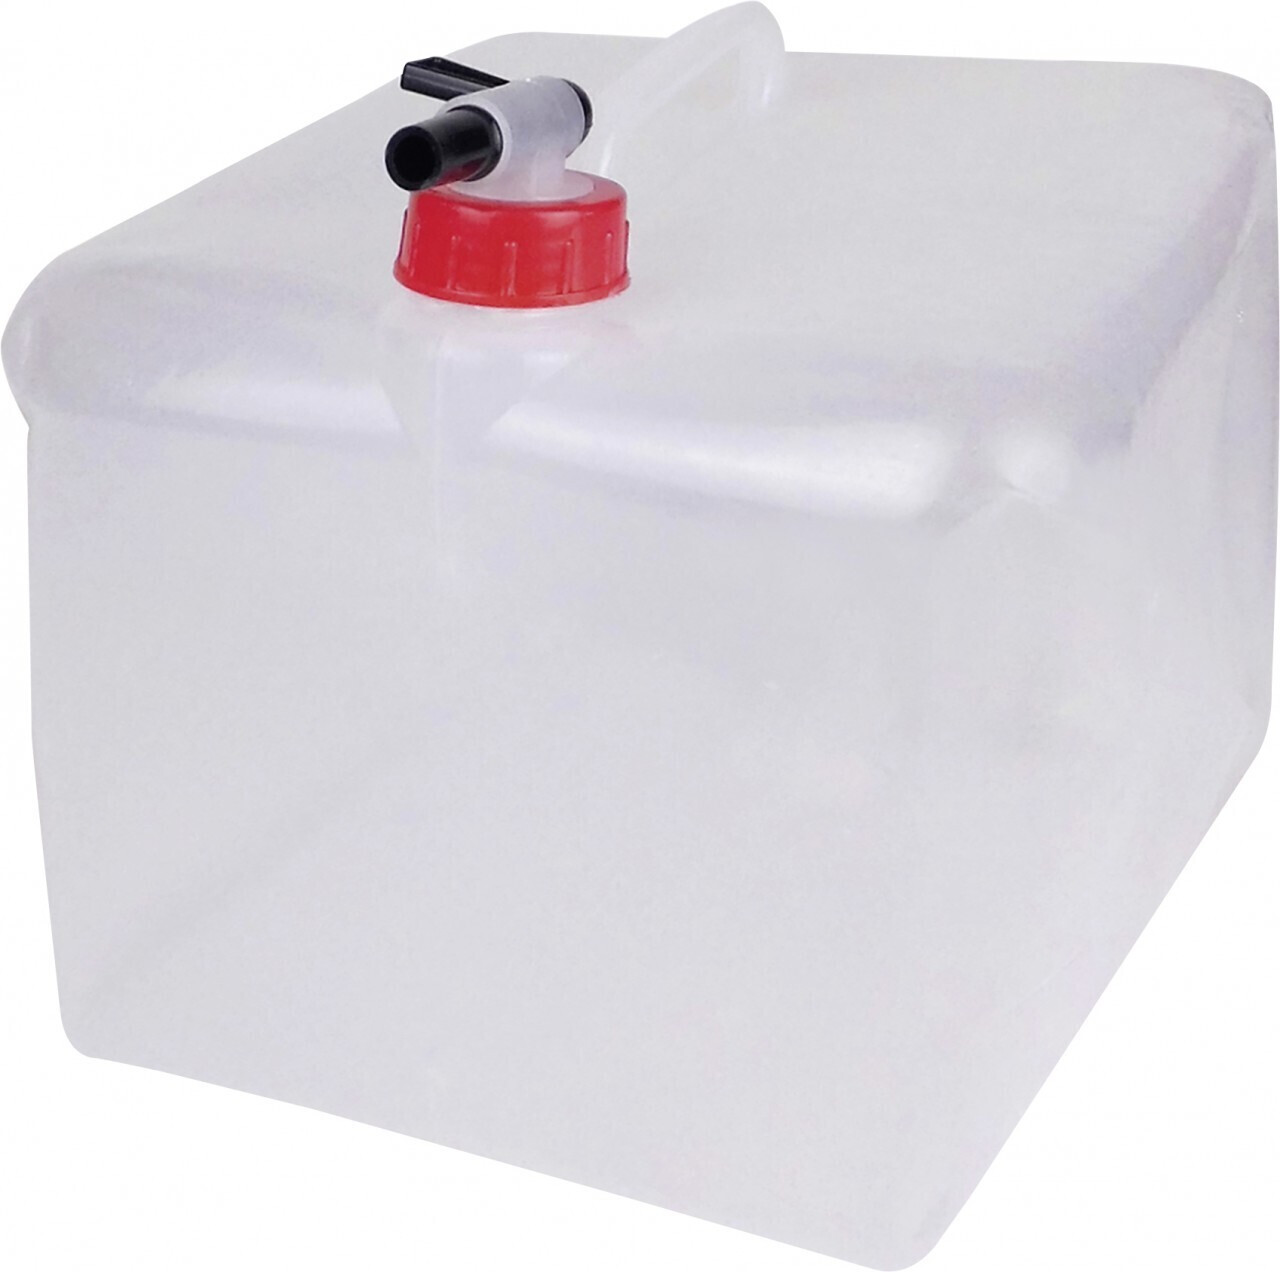 Faltbarer Wasserkanister inkl. Tragegriff, 10 Liter, BPA-frei